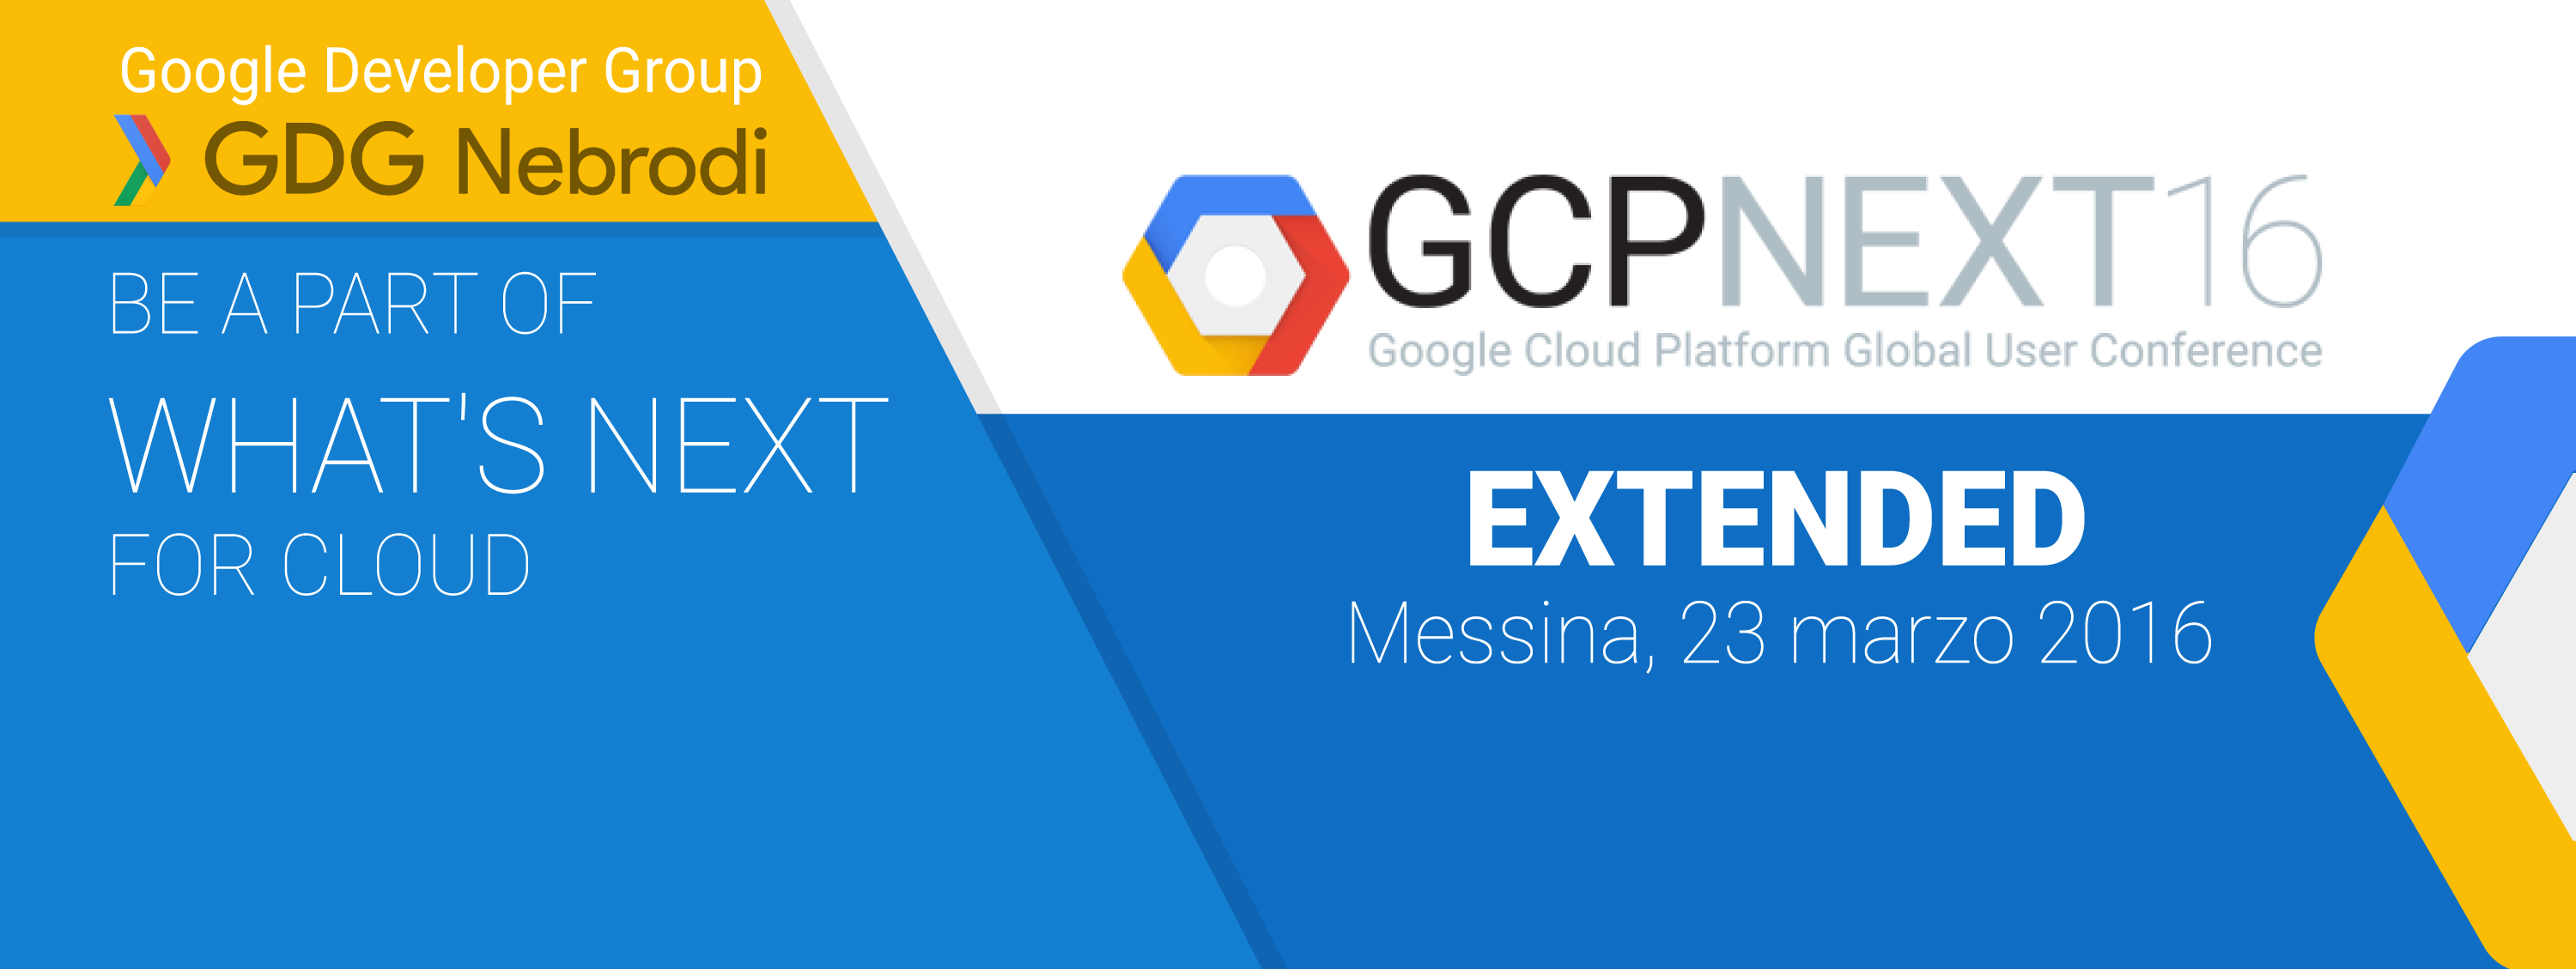 Google Cloud Platform Conference 2016